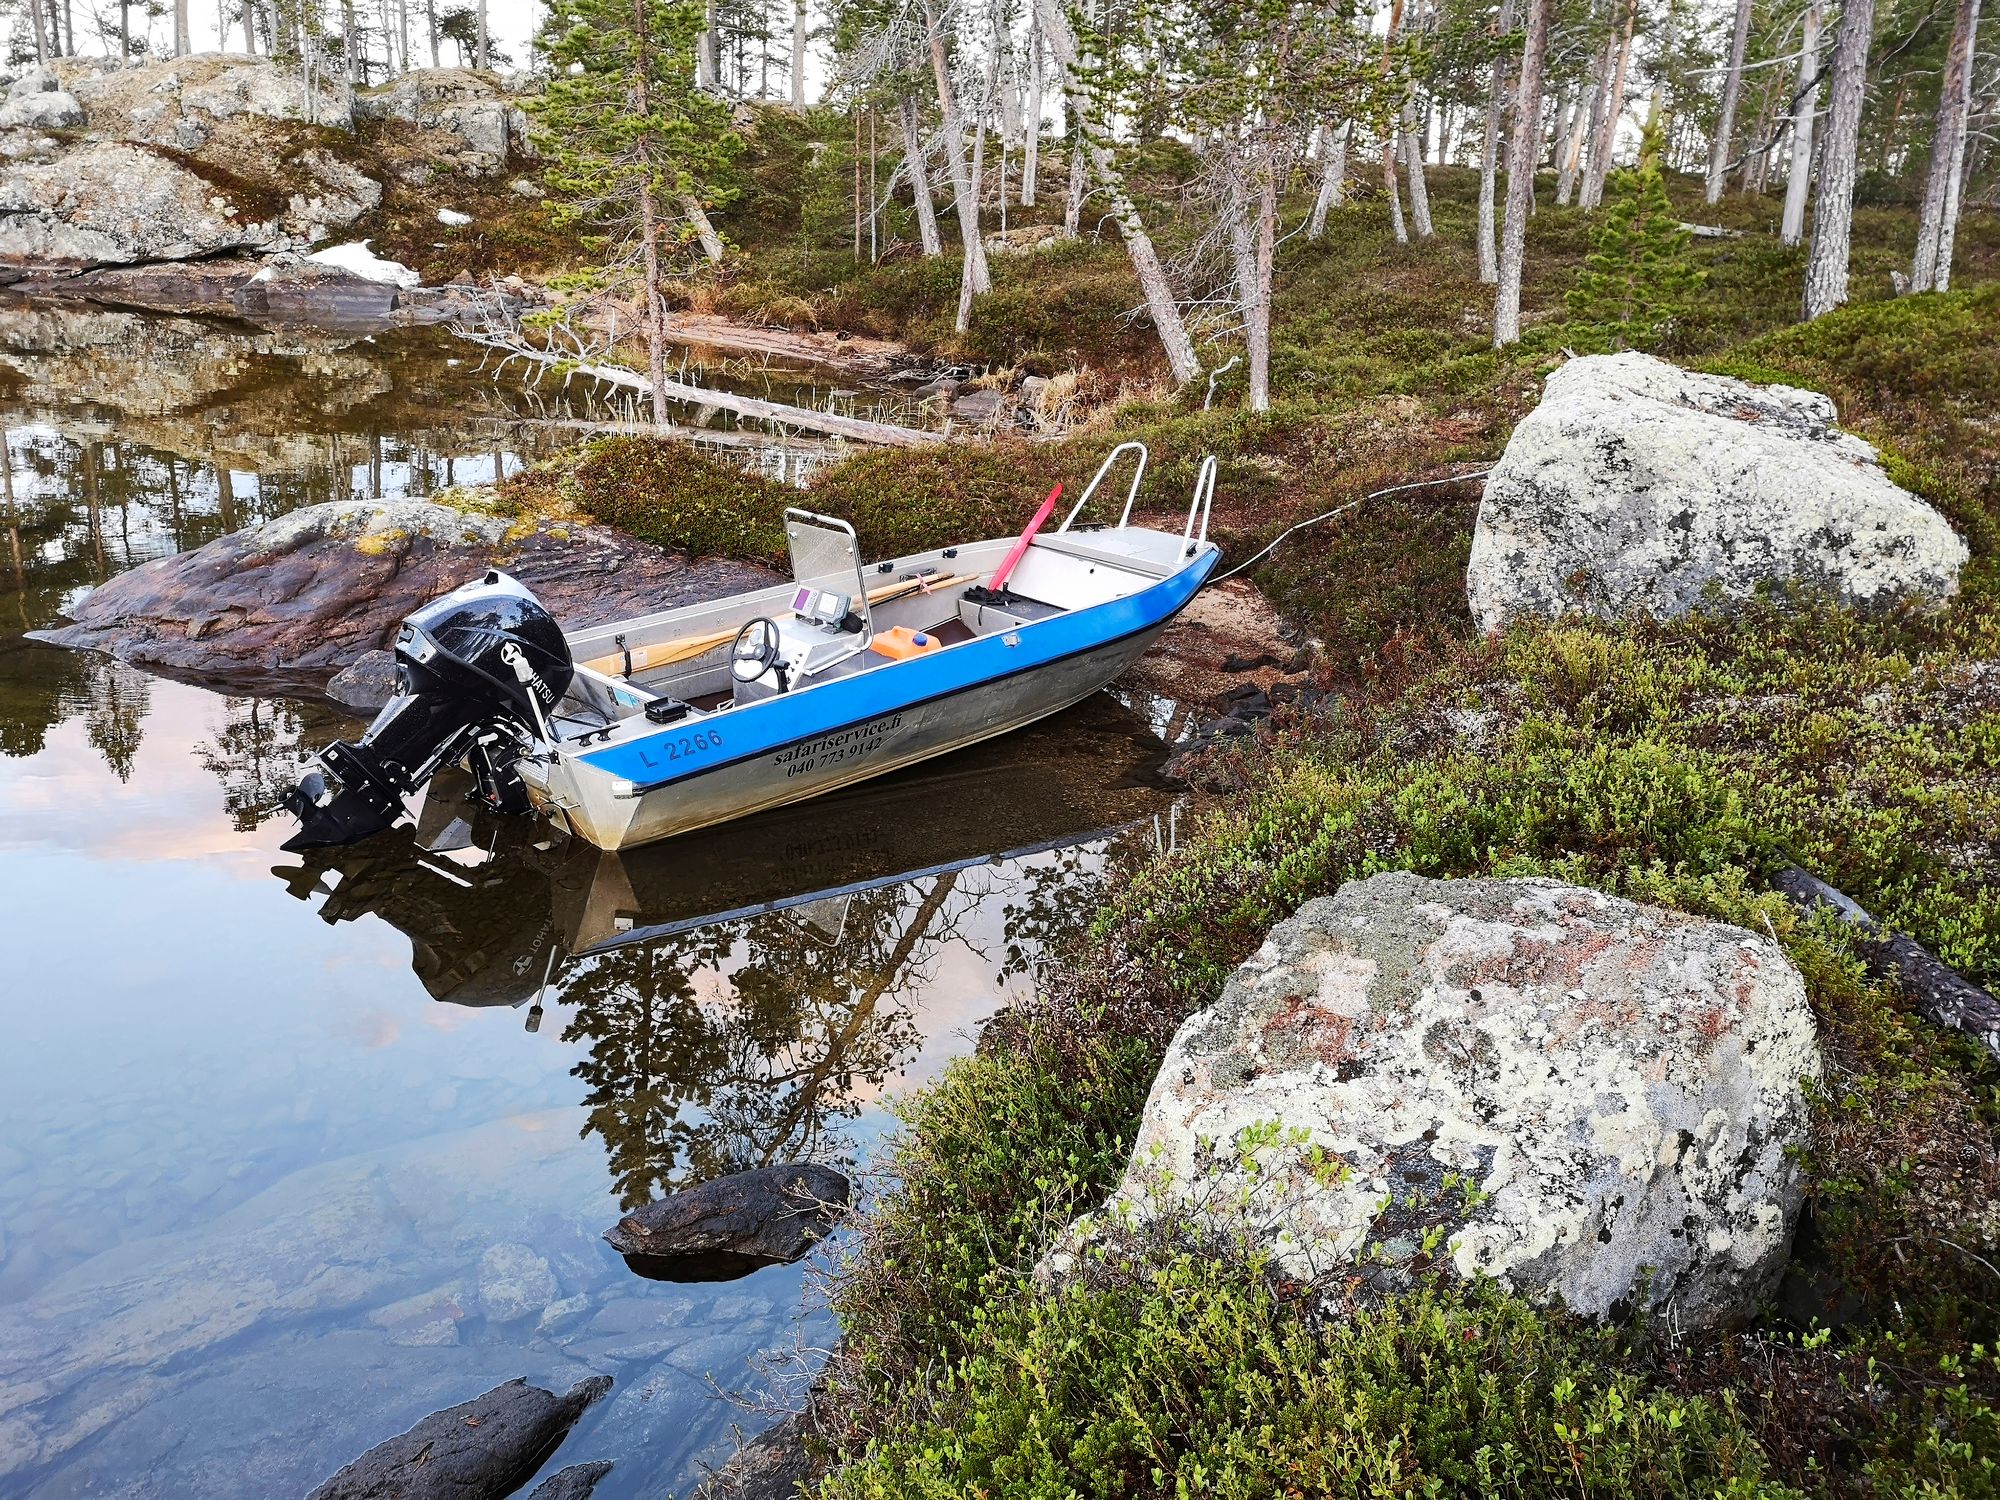 Veneellä saa järvestä enemmän irti, sillä myös saaressa on koettavaa. © Markus Ånäs